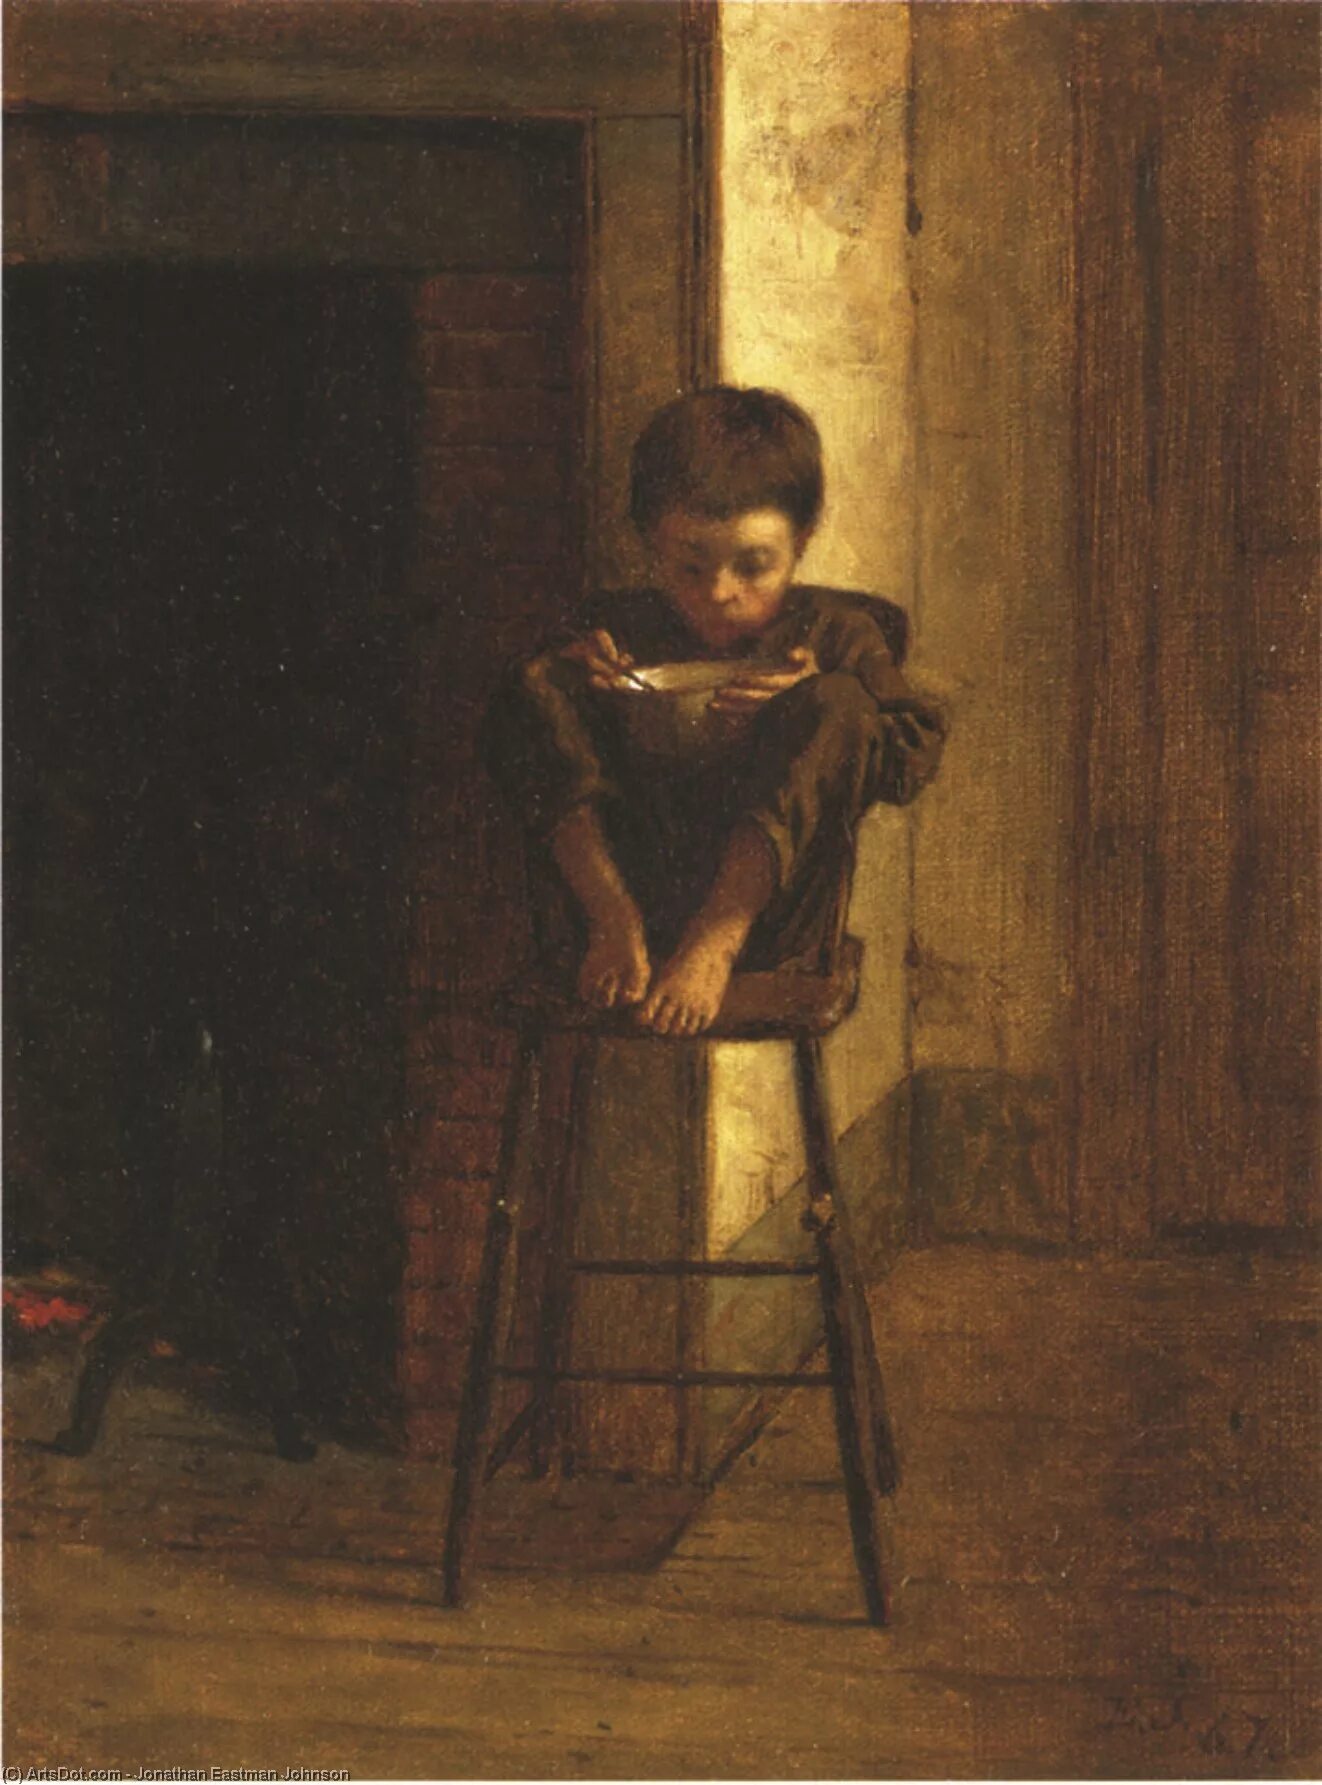 Картина мальчик с куклой на фоне окна. Eastman Johnson (American Painter) 1824 - 1906. Истман Джонсон художник. Картины с детьми известных художников. Мальчишки живопись.